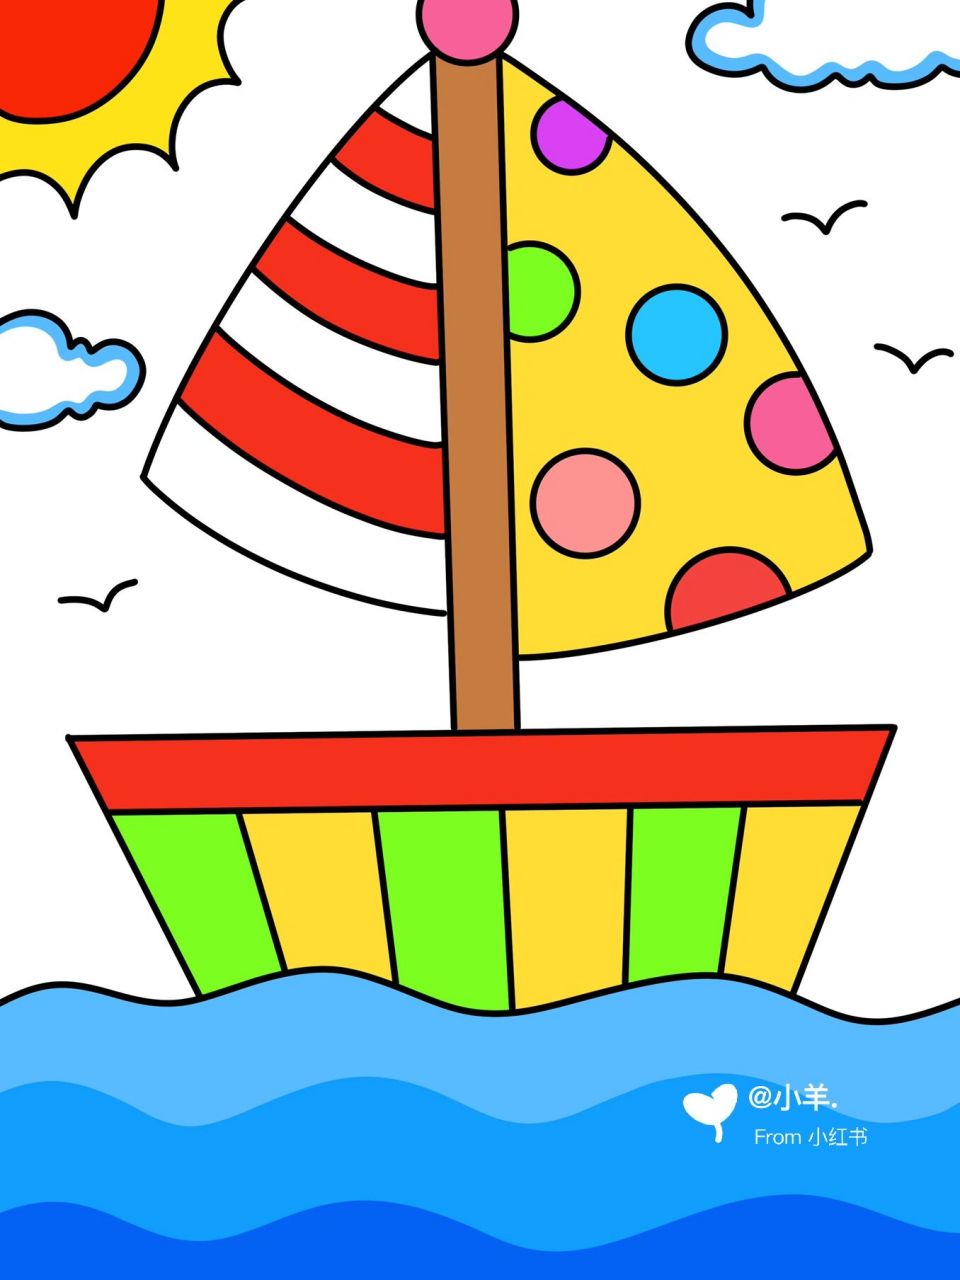 帆船简笔画彩色画法图片